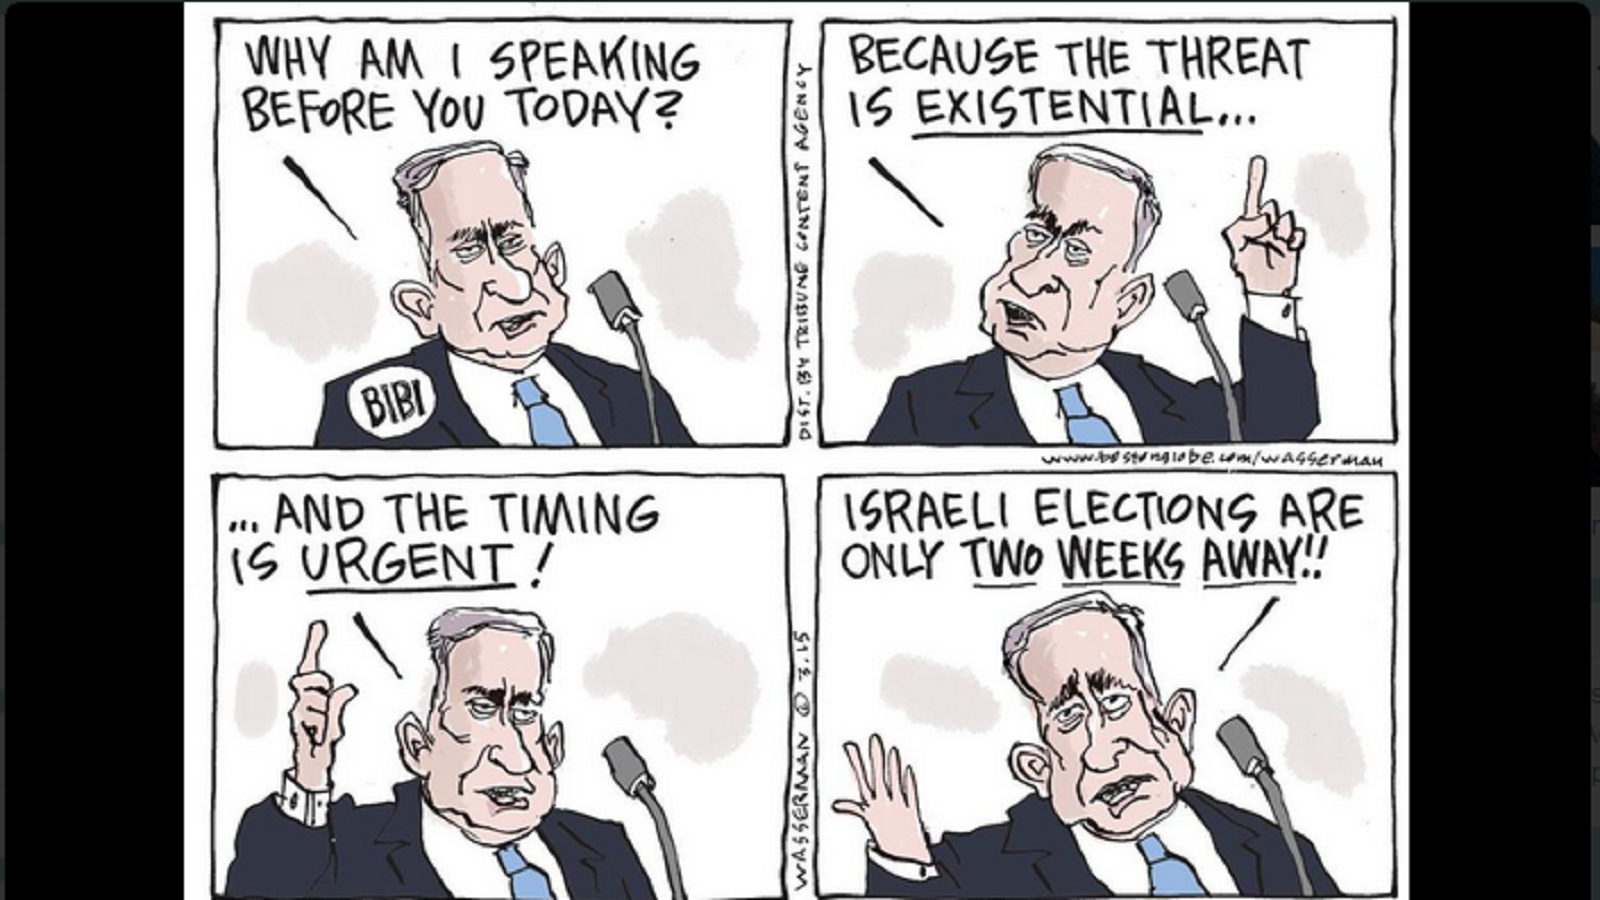 نتنياهو: أتكلم اليوم لأن التهديد ما زال موجوداً، والتوقيت ملحّ، الانتخابات الإسرائيلية بعد أسبوعين من اليوم!